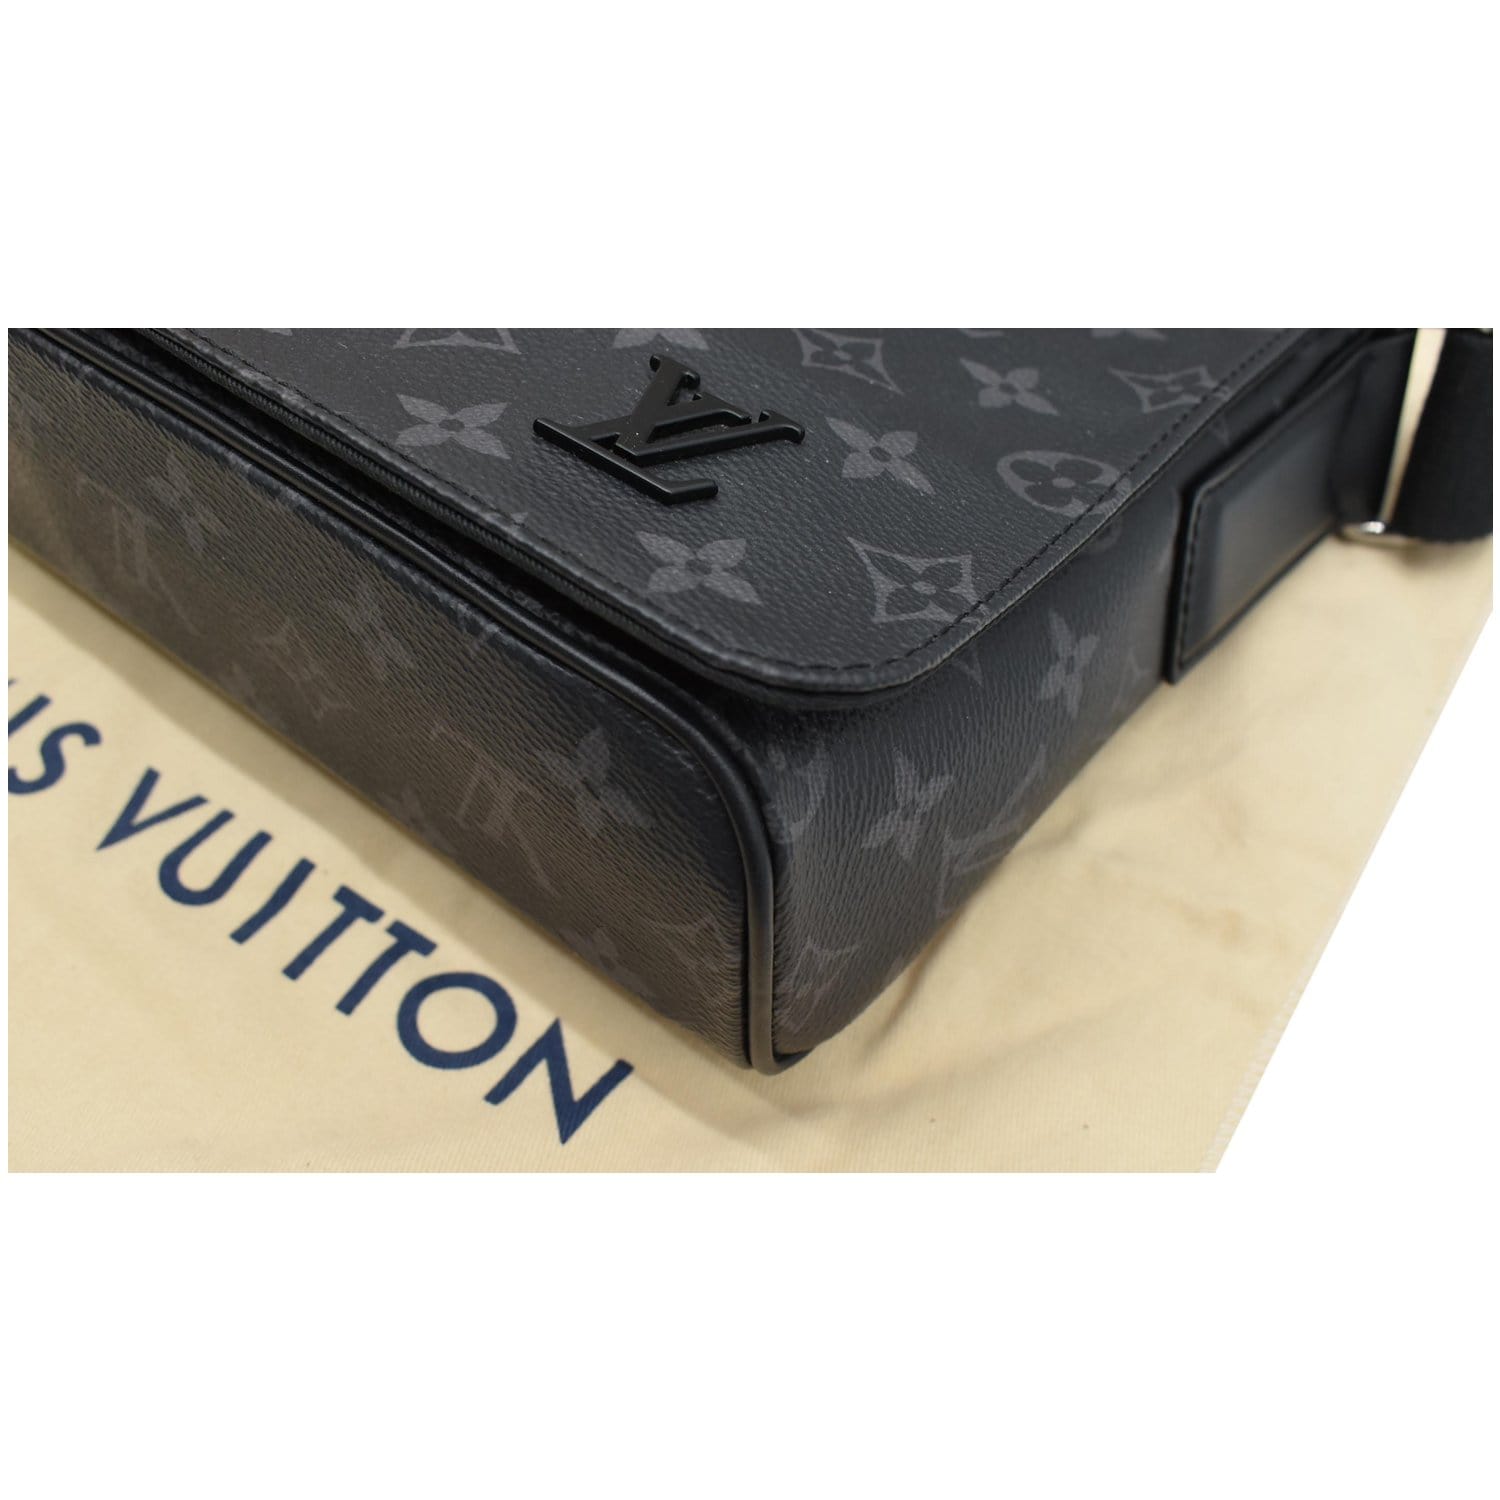 Louis Vuitton District Messenger Bag Monogram Eclipse Canvas PM